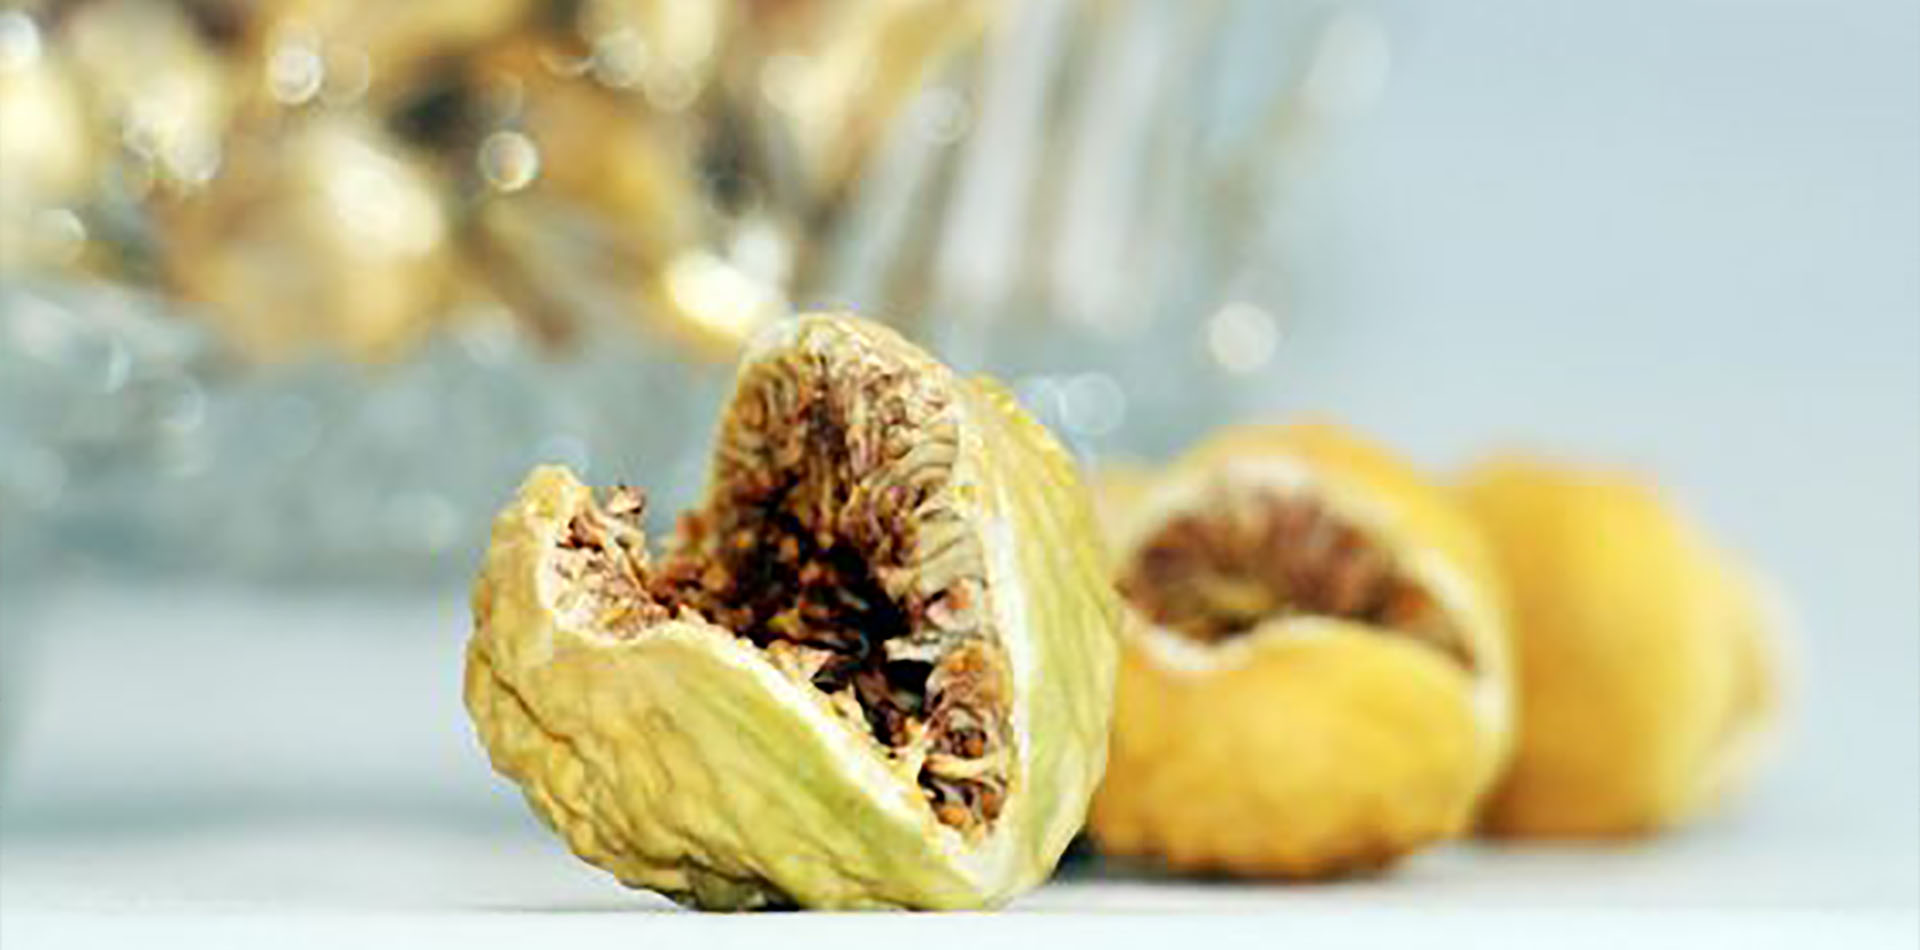 انجیر خشک- میثم- انجیر- ایران-استهبان- خشکبار-Iran--fig-dried fig-Iranian dried fig-dry fig-anjeer-Tin-export-Iran-China-